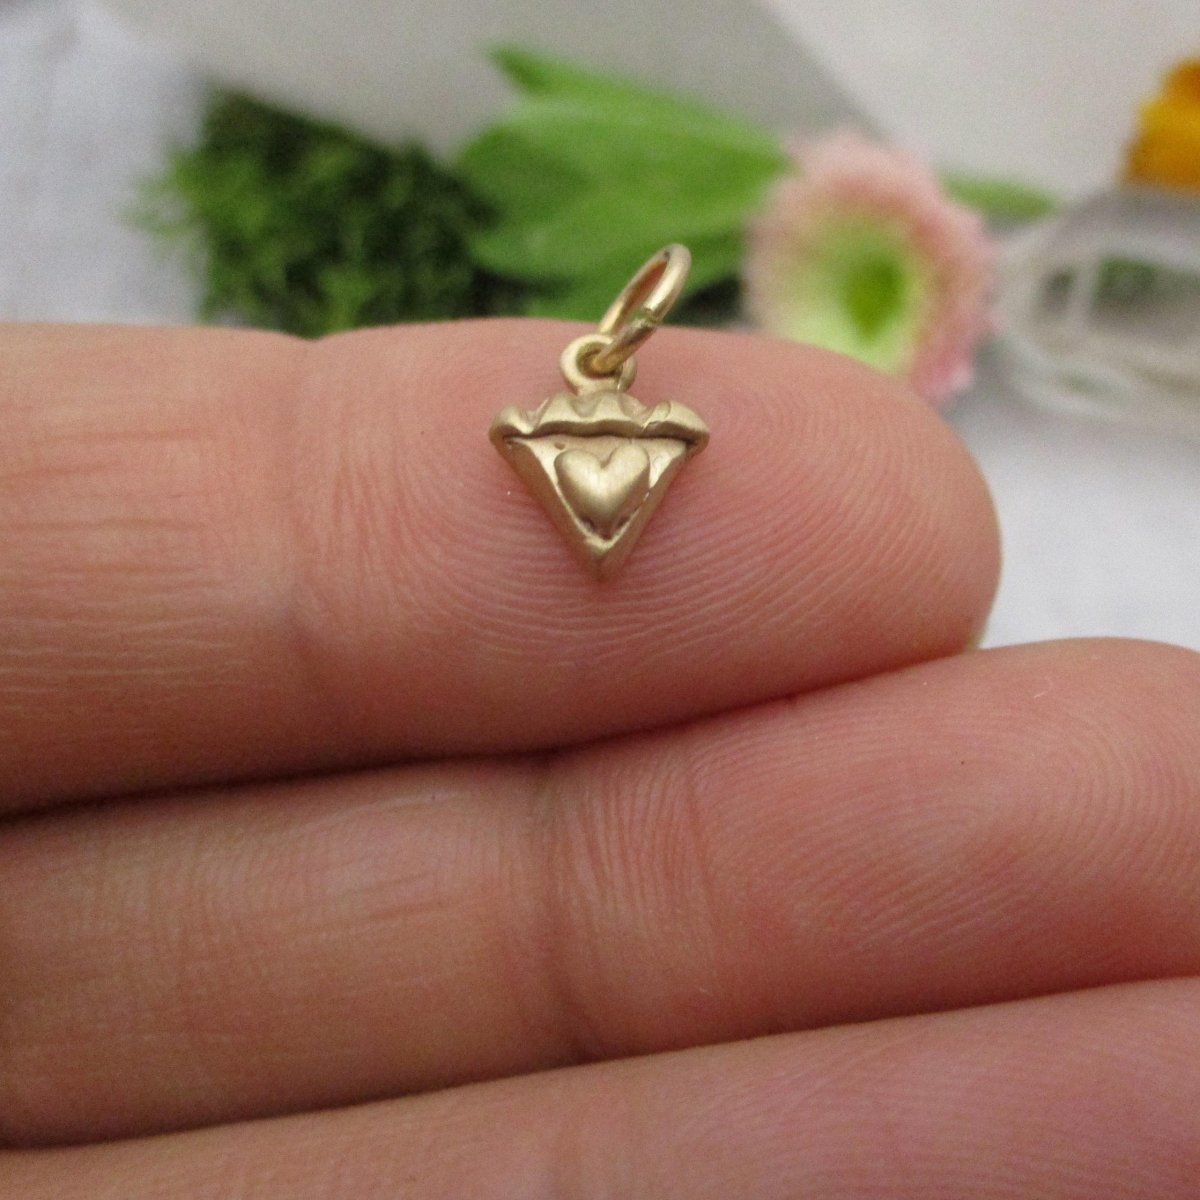 14 Karat Gold Slice of Sweetie Pie Charm, My Little Sweetie Pie Pendant - Luxe Design Jewellery